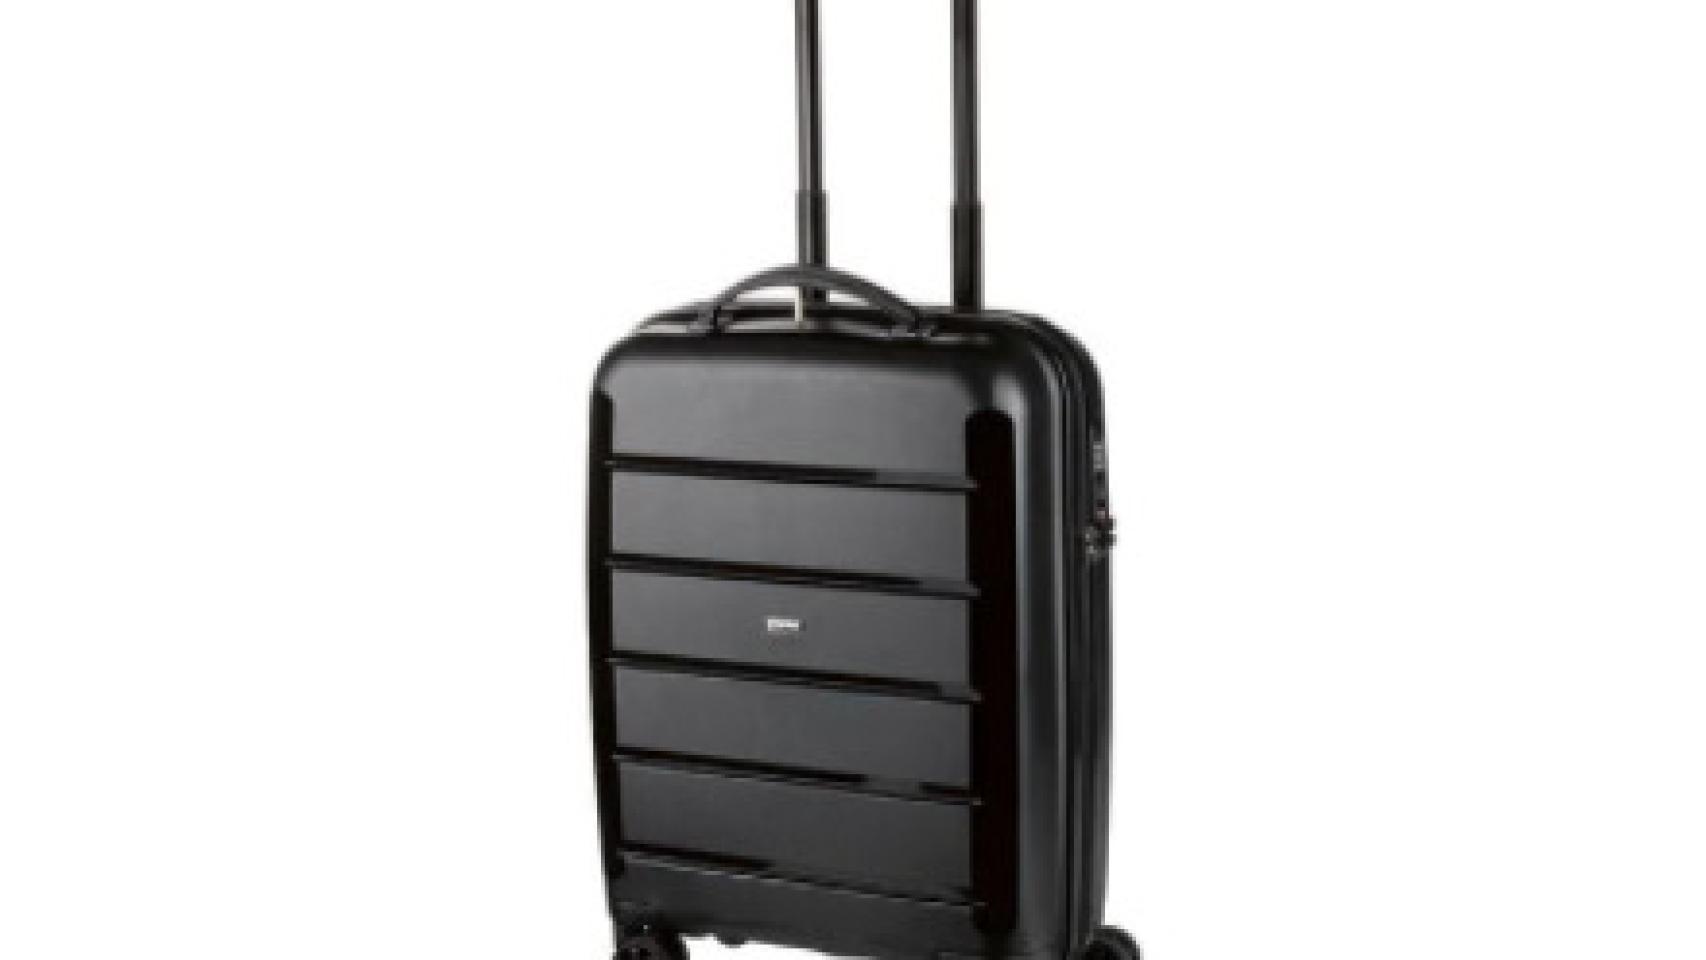 Las nuevas maletas de Lidl tiradas de precio que se van agotar en horas: 18 euros